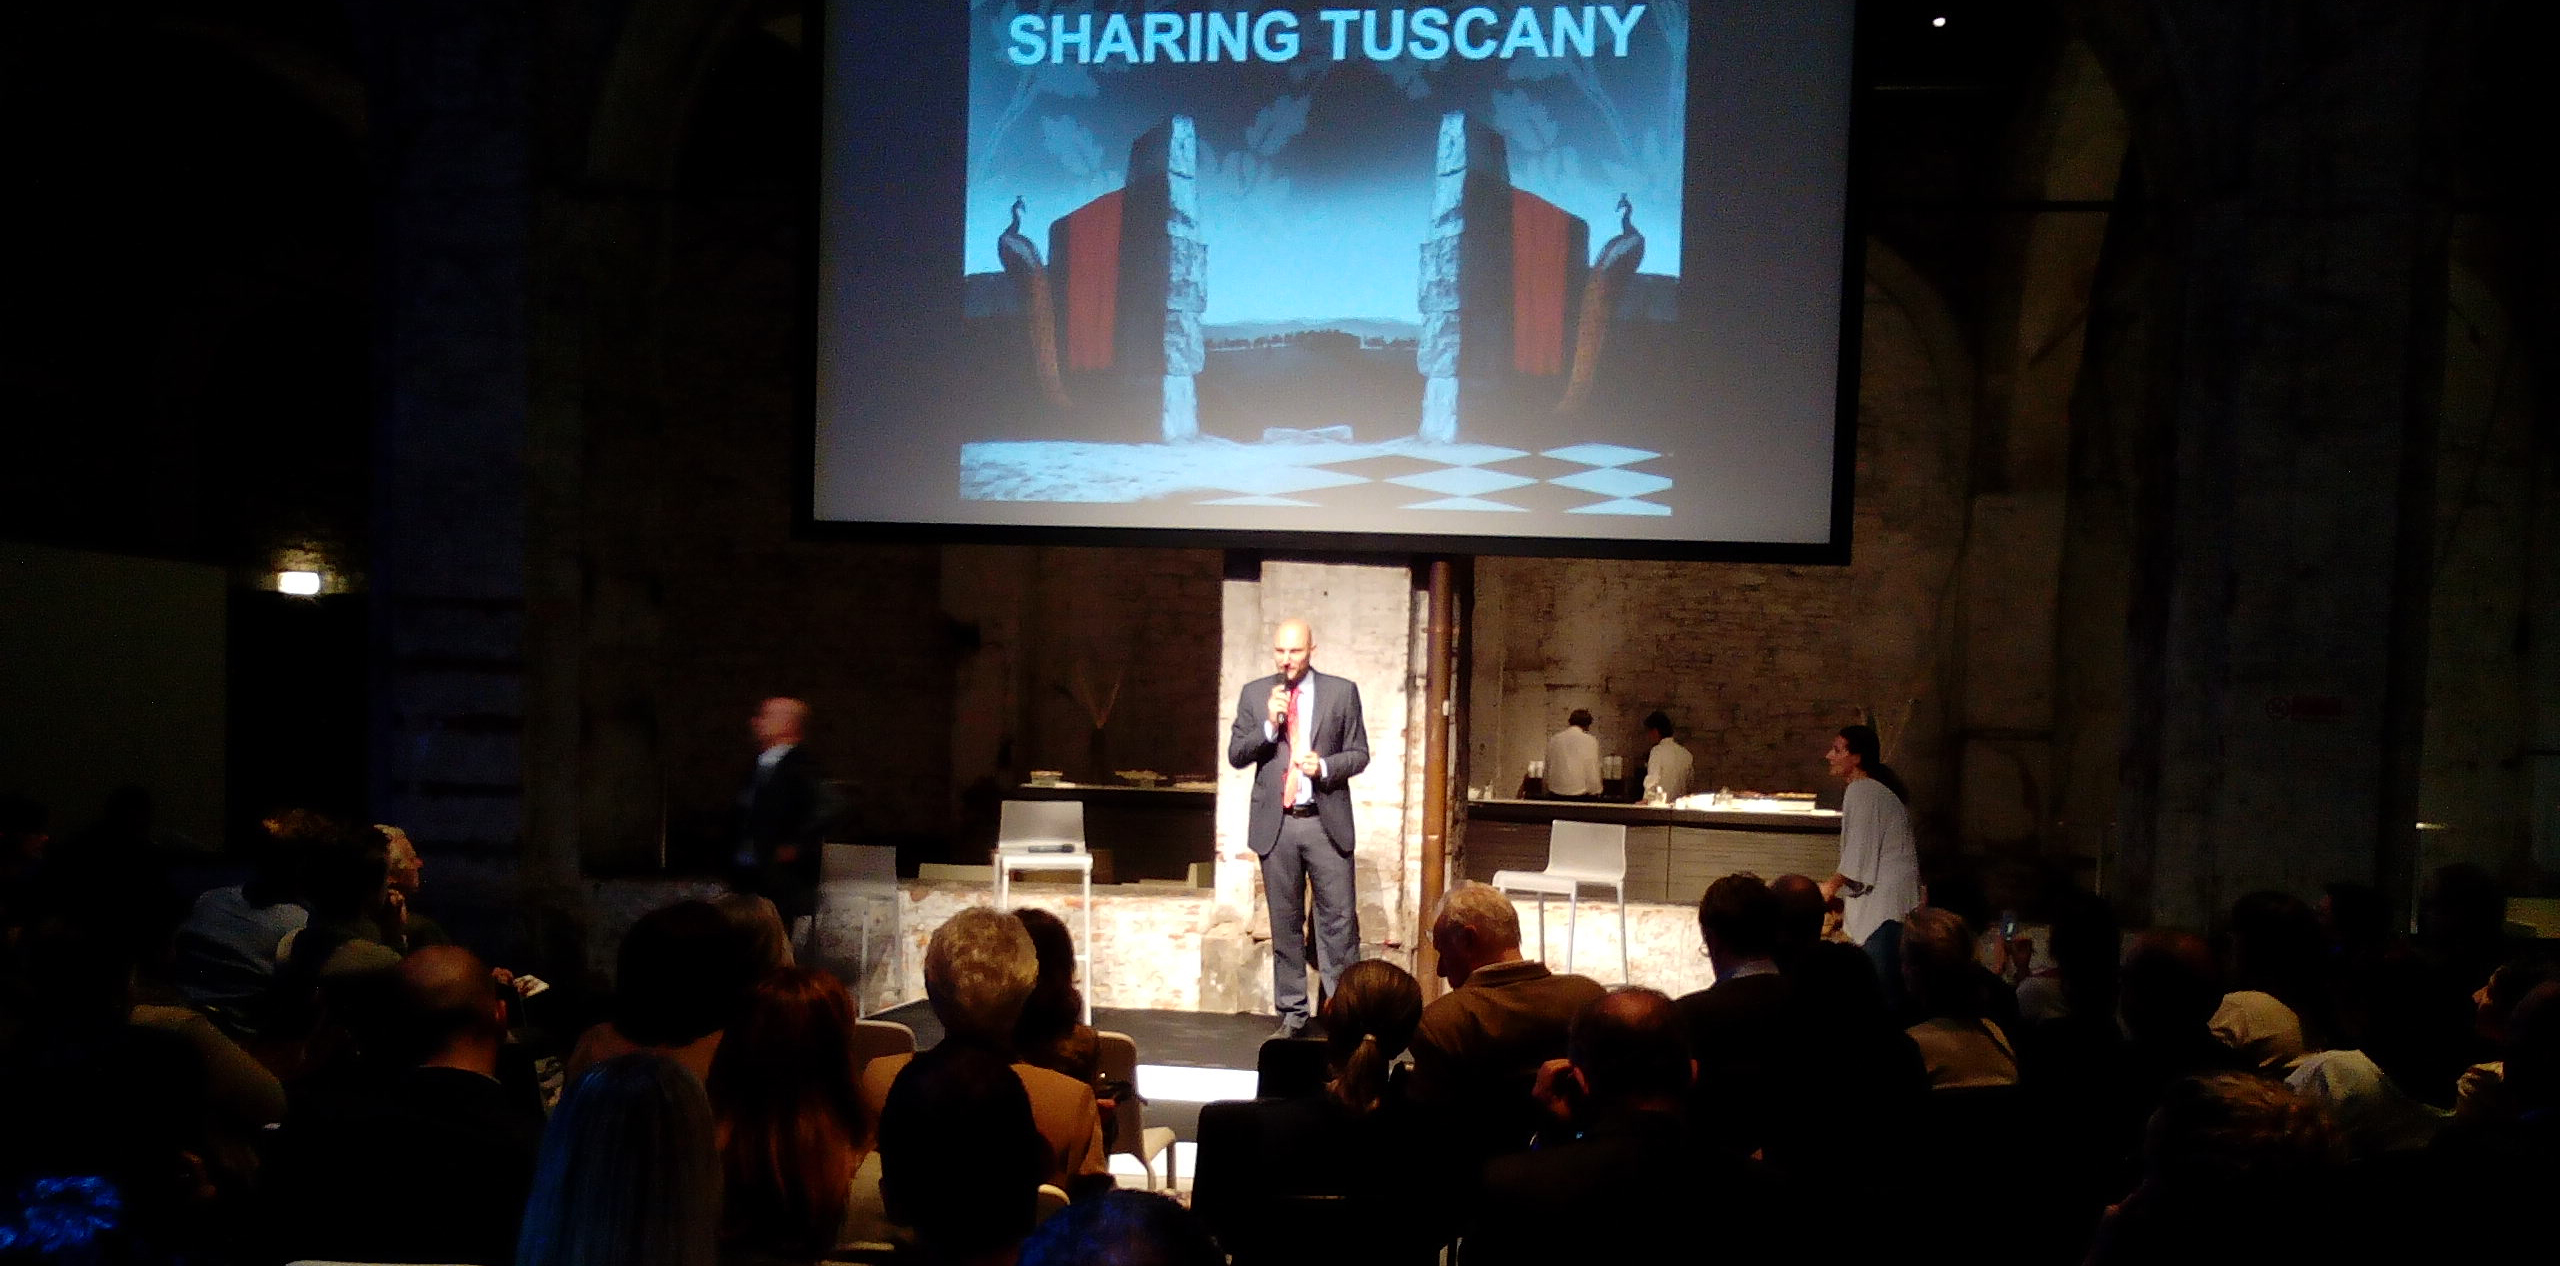 Sharing Tuscany